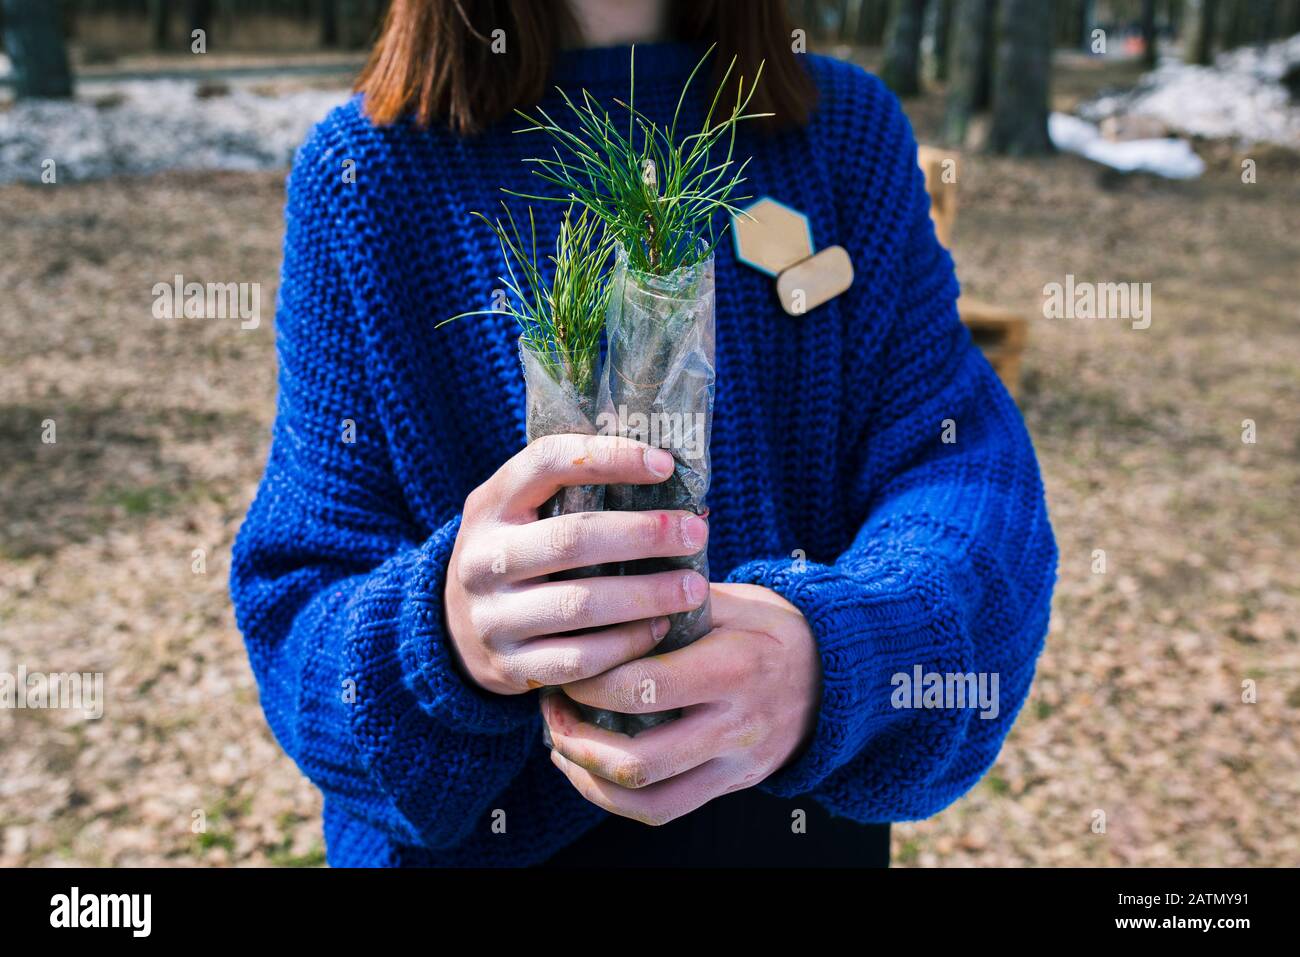 Une jeune fille dans un pull bleu tient un semis de cèdre dans ses mains. Usine de la famille des pins pour la plantation dans le sol. Le concept de restauration et de prote Banque D'Images